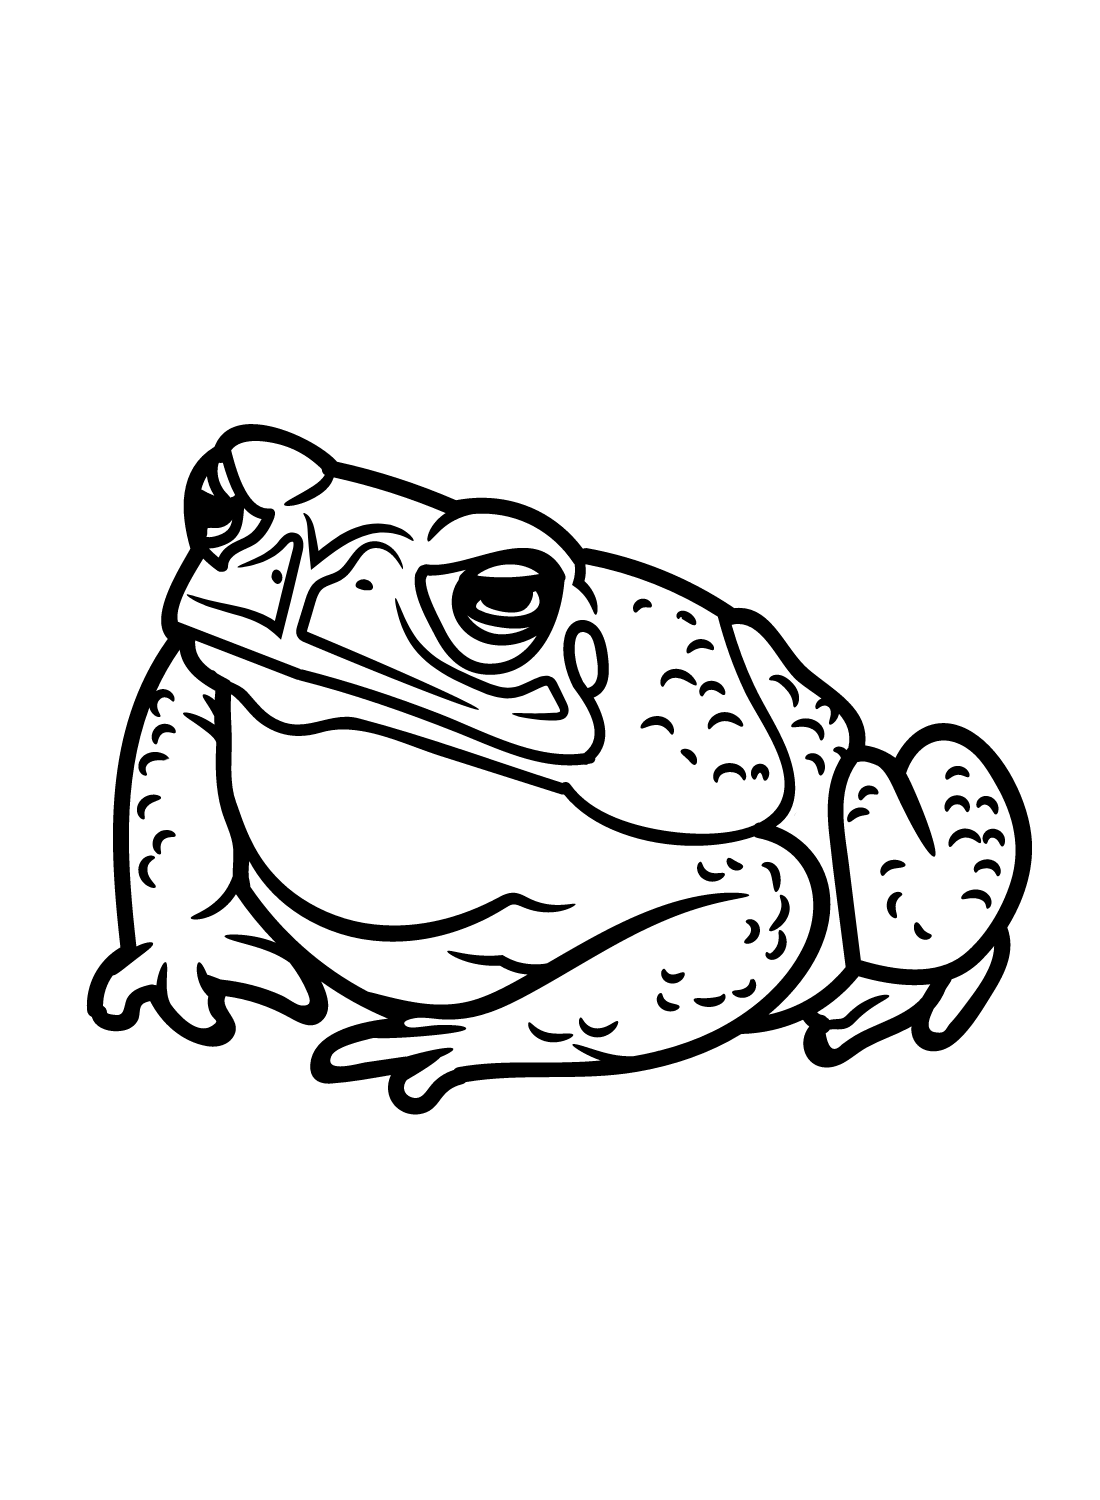 Злая жаба из Toad